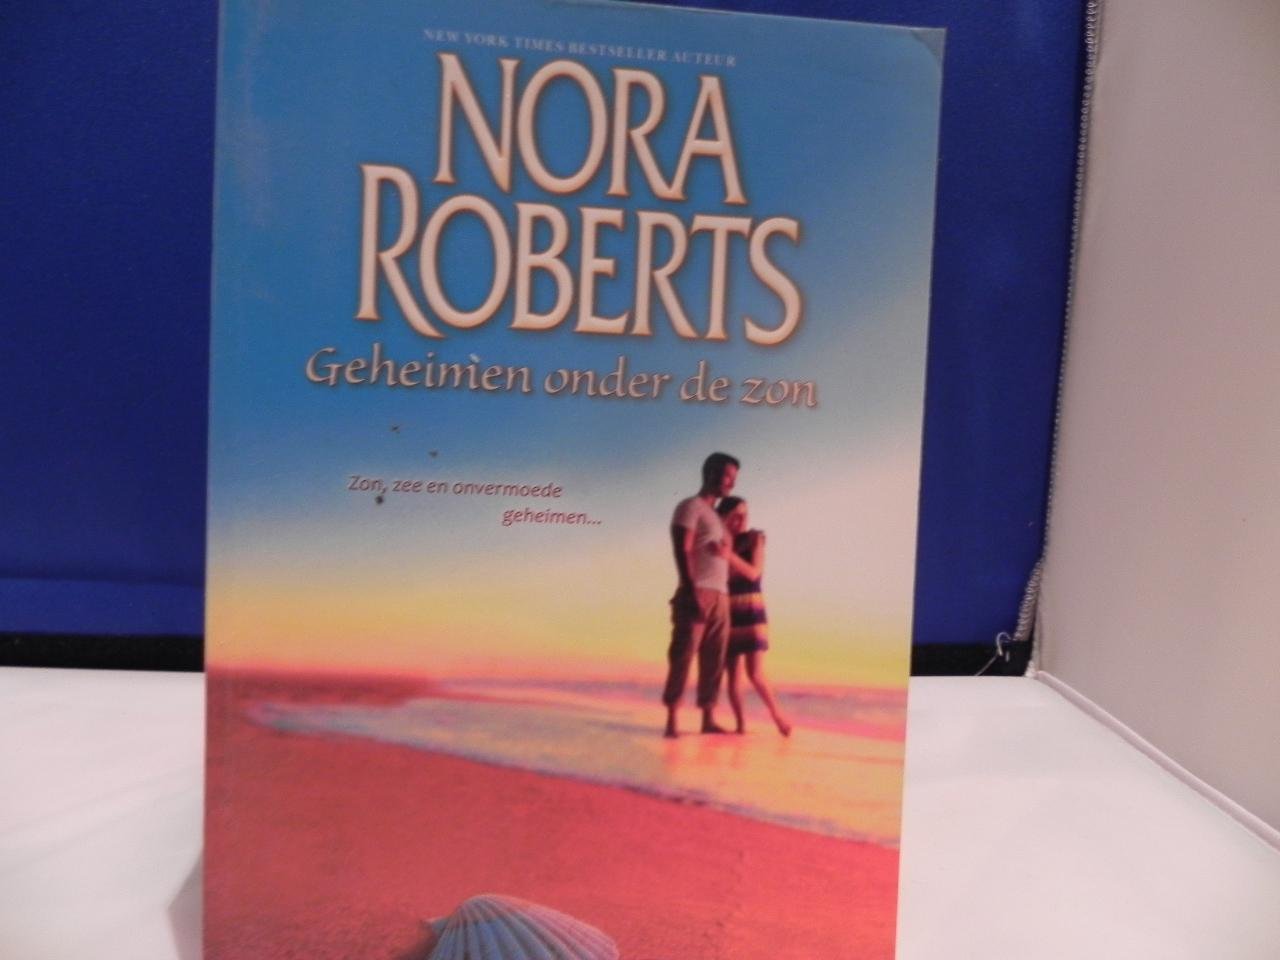 Nora Roberts - Geheimen onder de zon